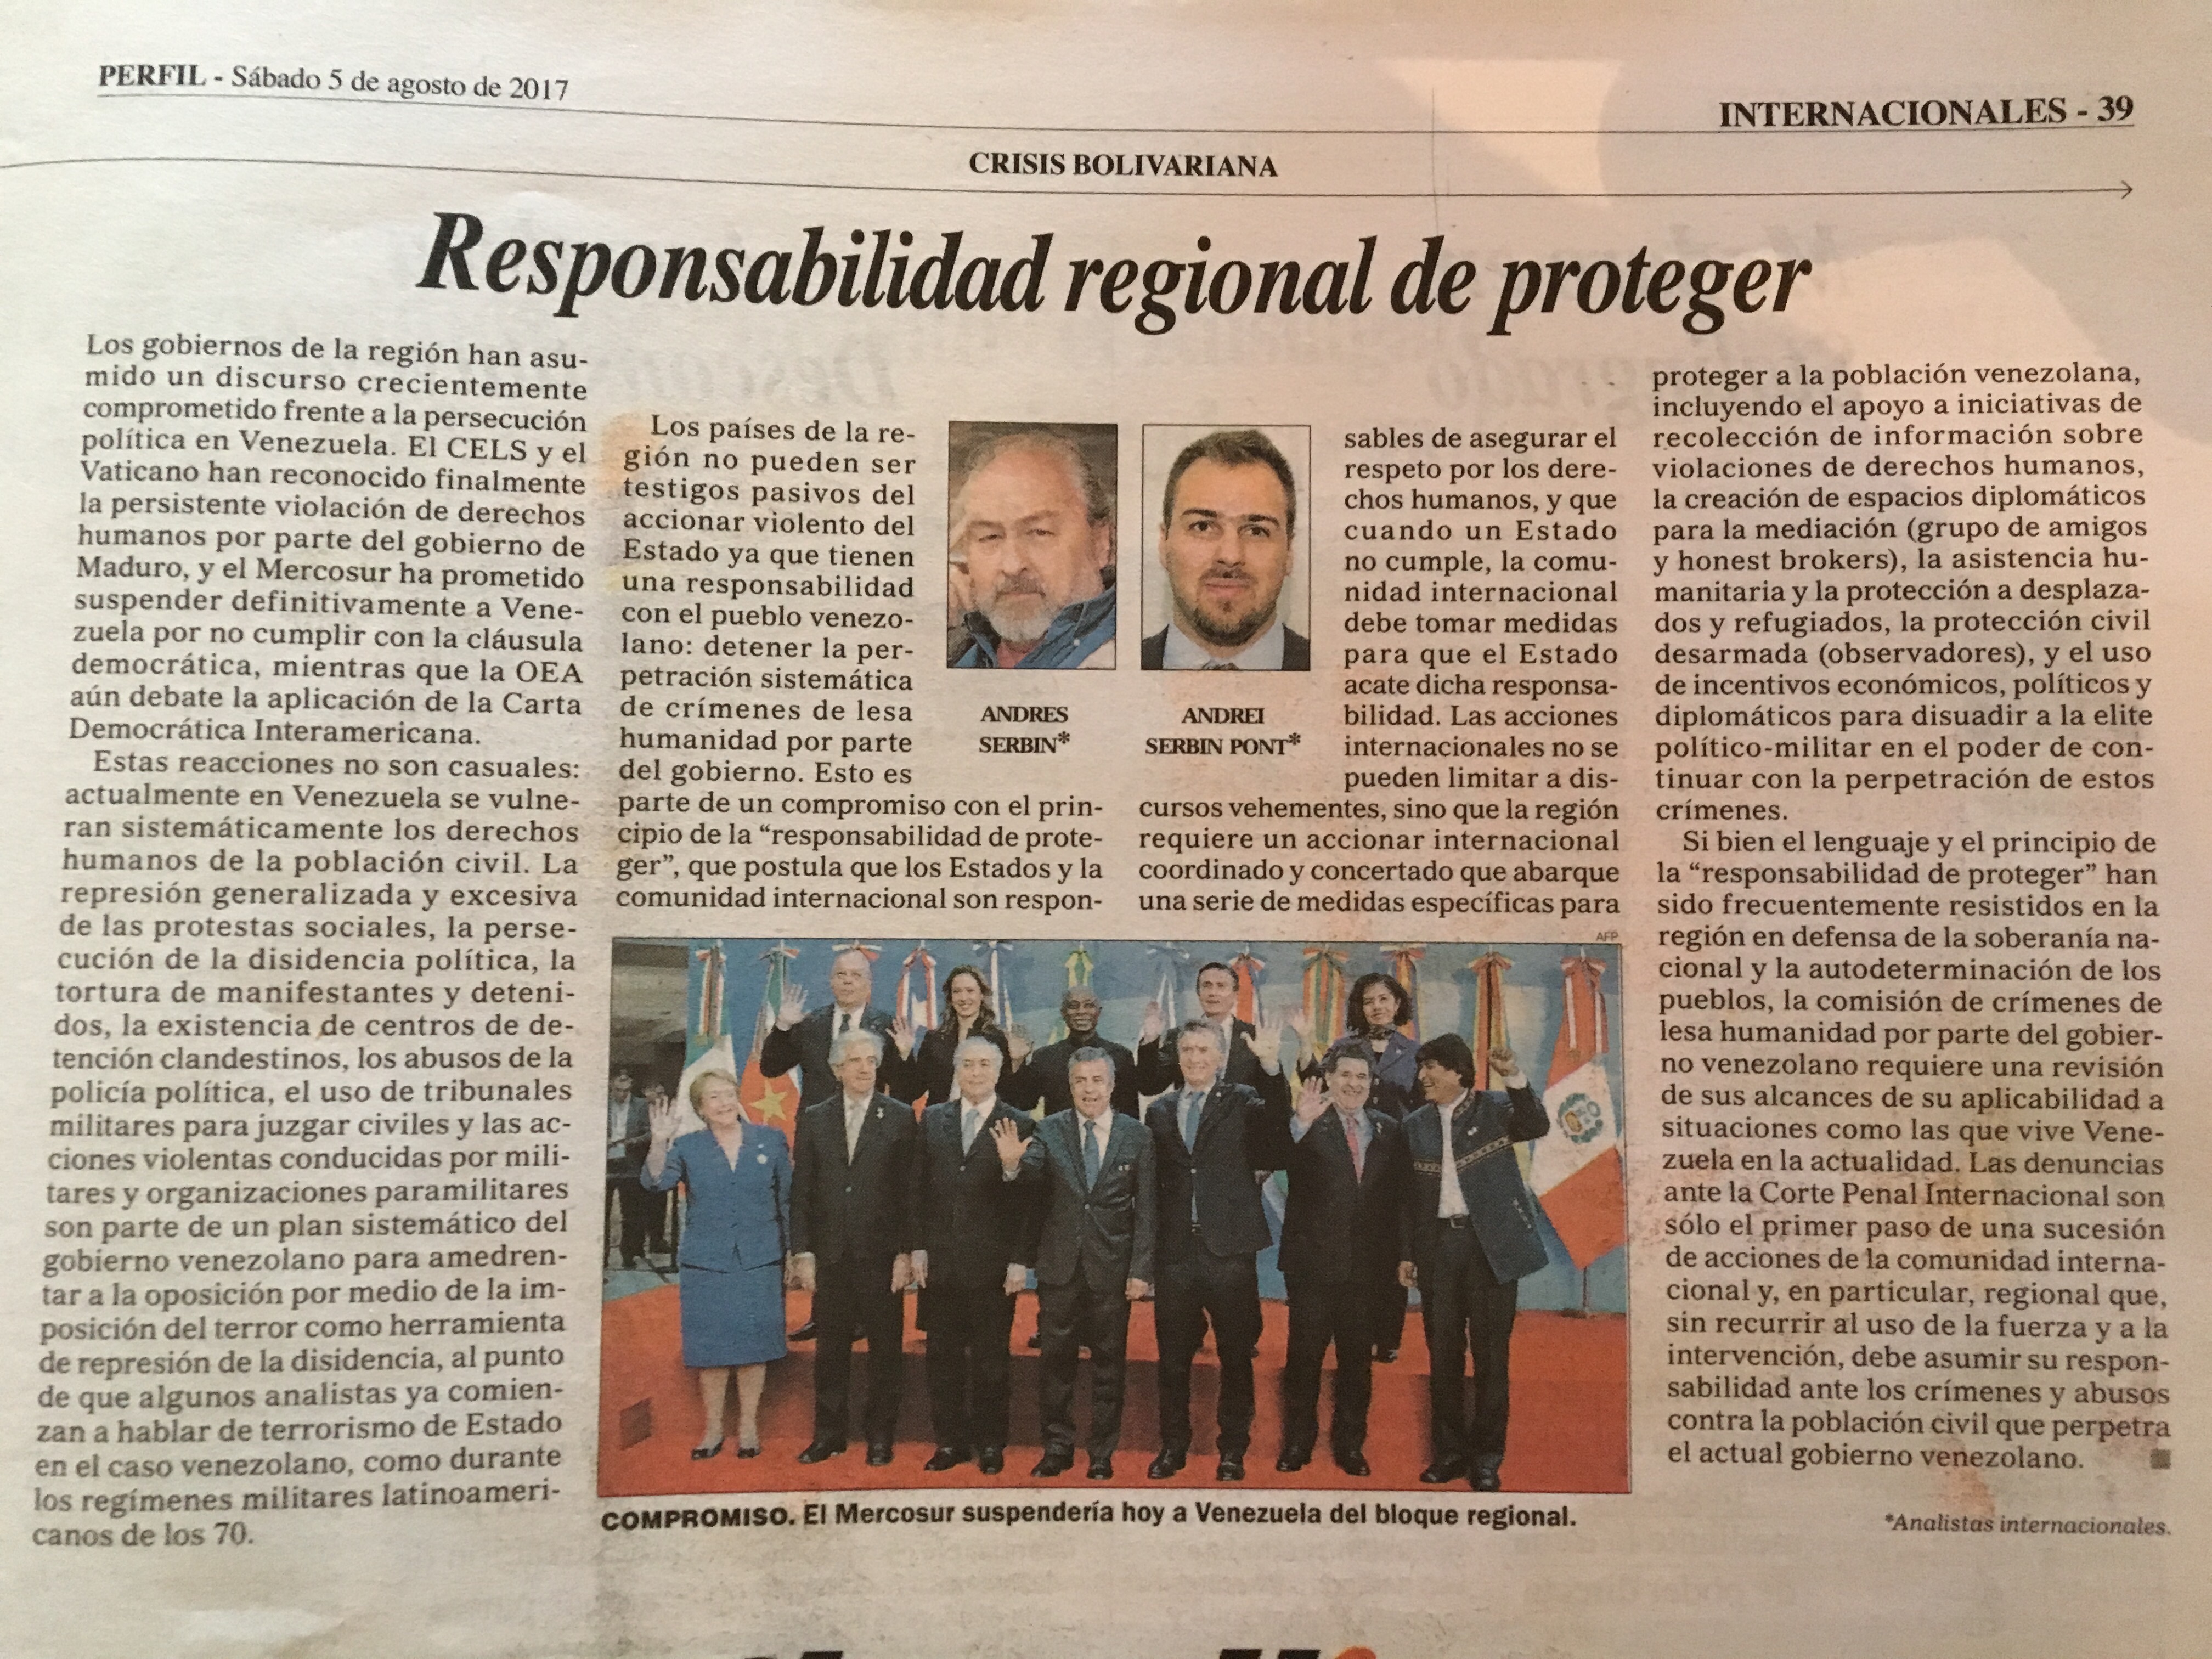 Andrés Serbin y Andrei Serbin Pont – Venezuela y la responsabilidad regional de proteger